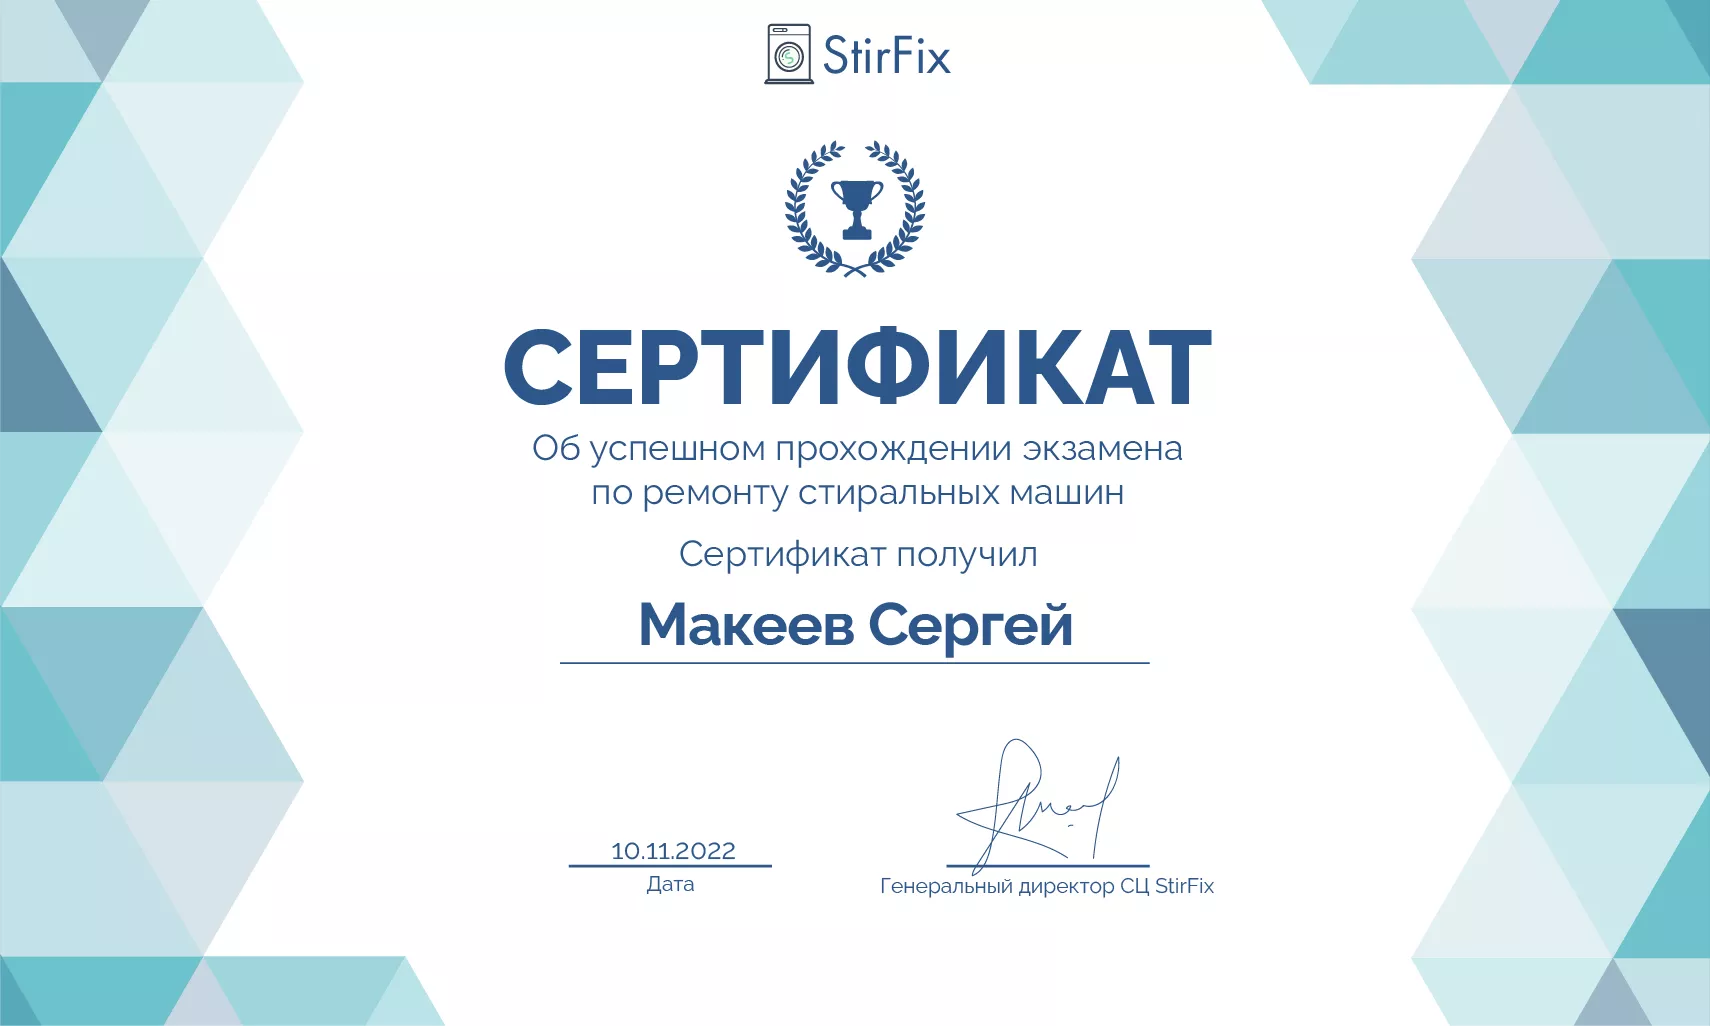 Макеев Сергей сертификат мастера по ремонту стиральных машин